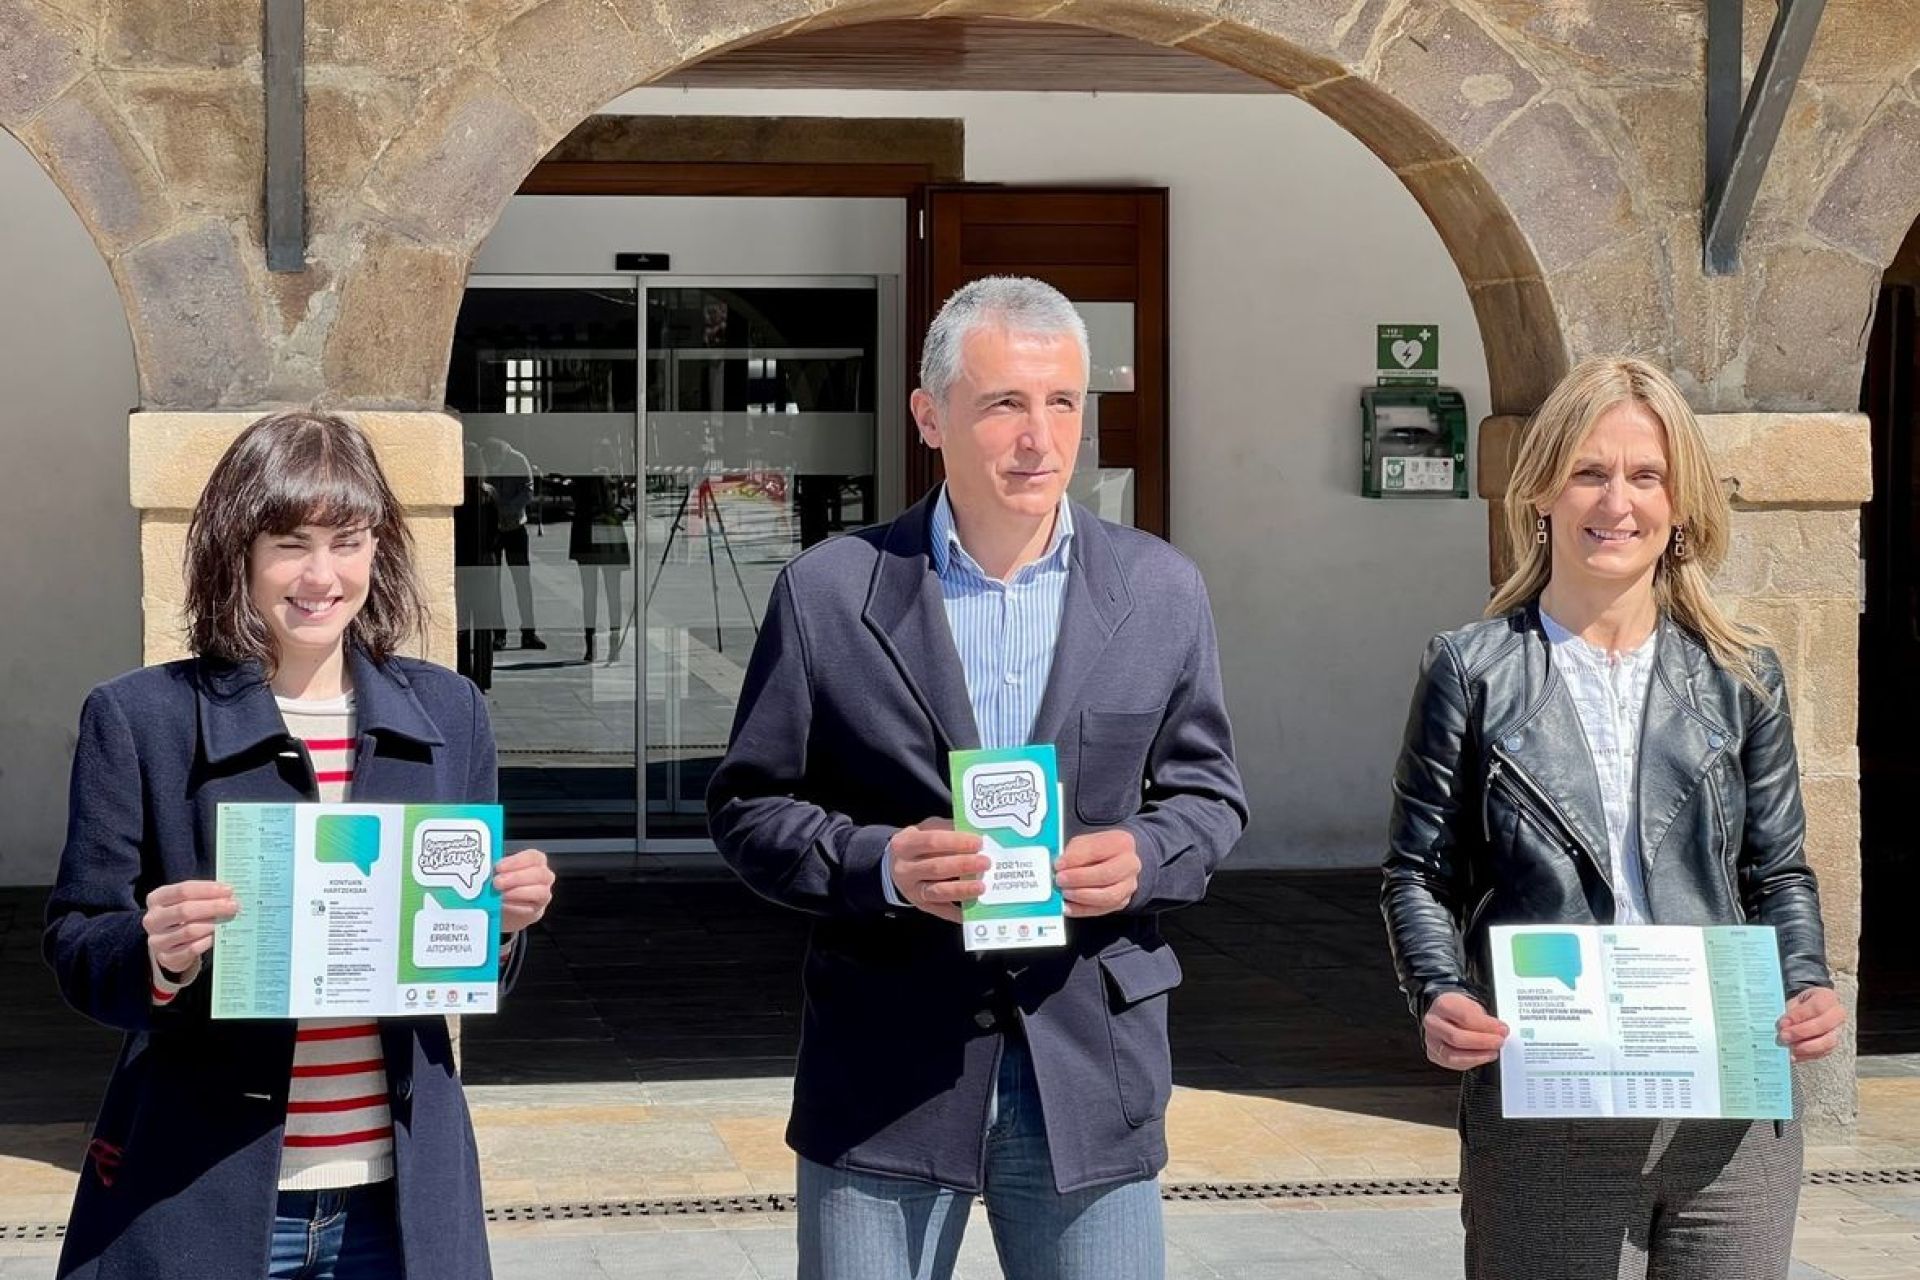 En marcha la campaña para animar a hacer la declaración de la renta en euskera